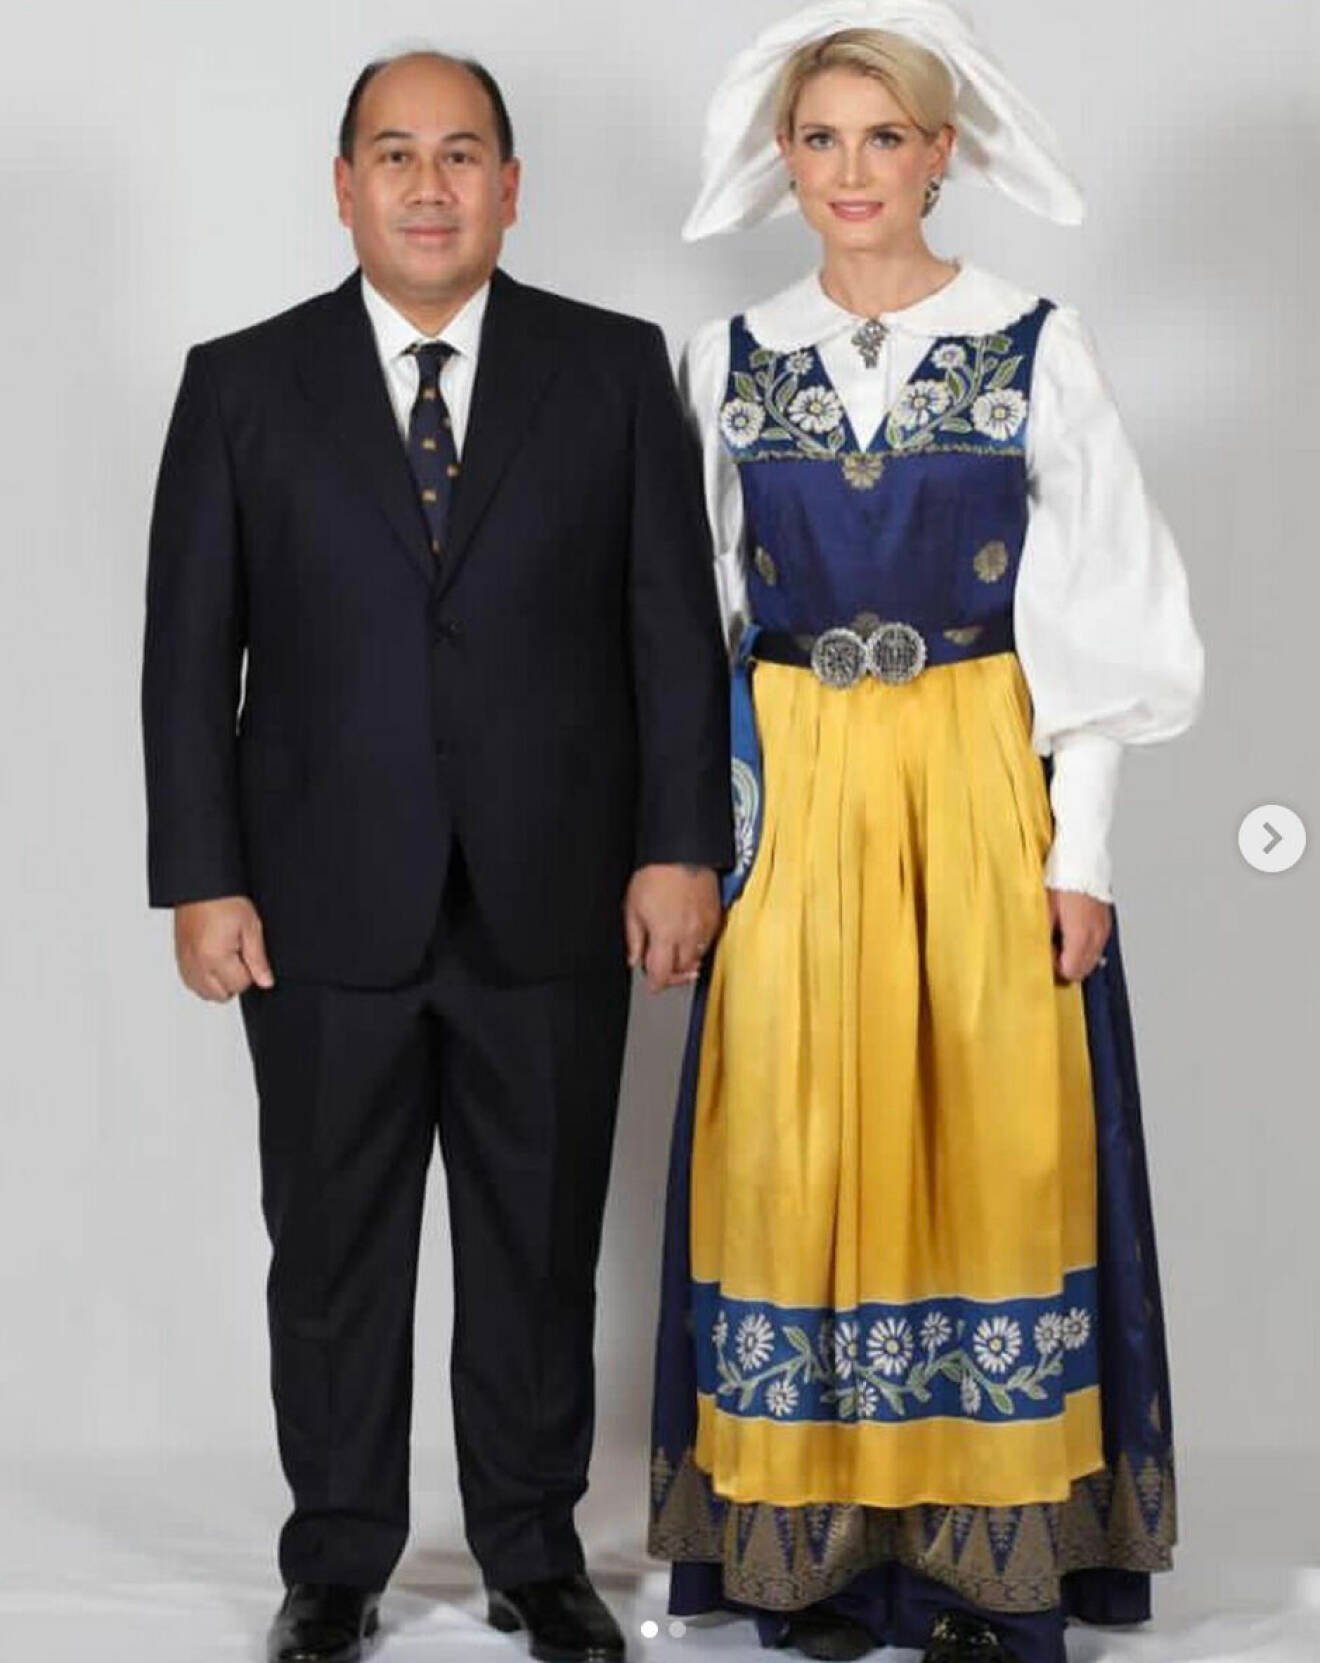 Svenska prinsessan Sofie Louise Johansson med sin make